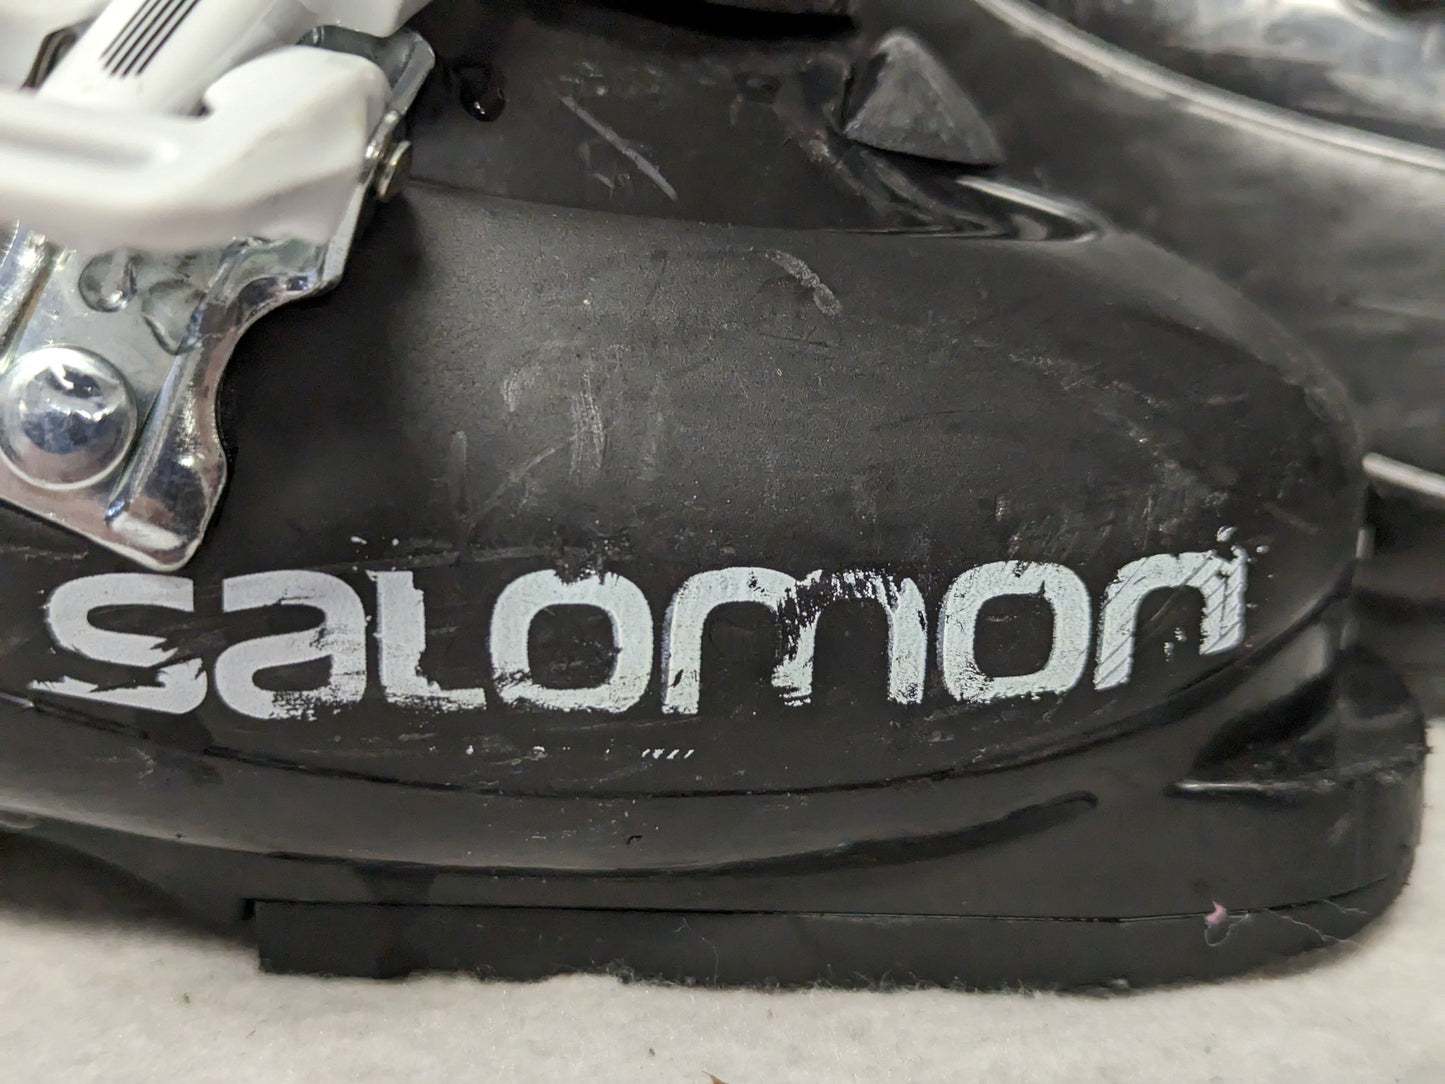 Salomon Team Ski Boots Size 23.5 Color Black Condition Used